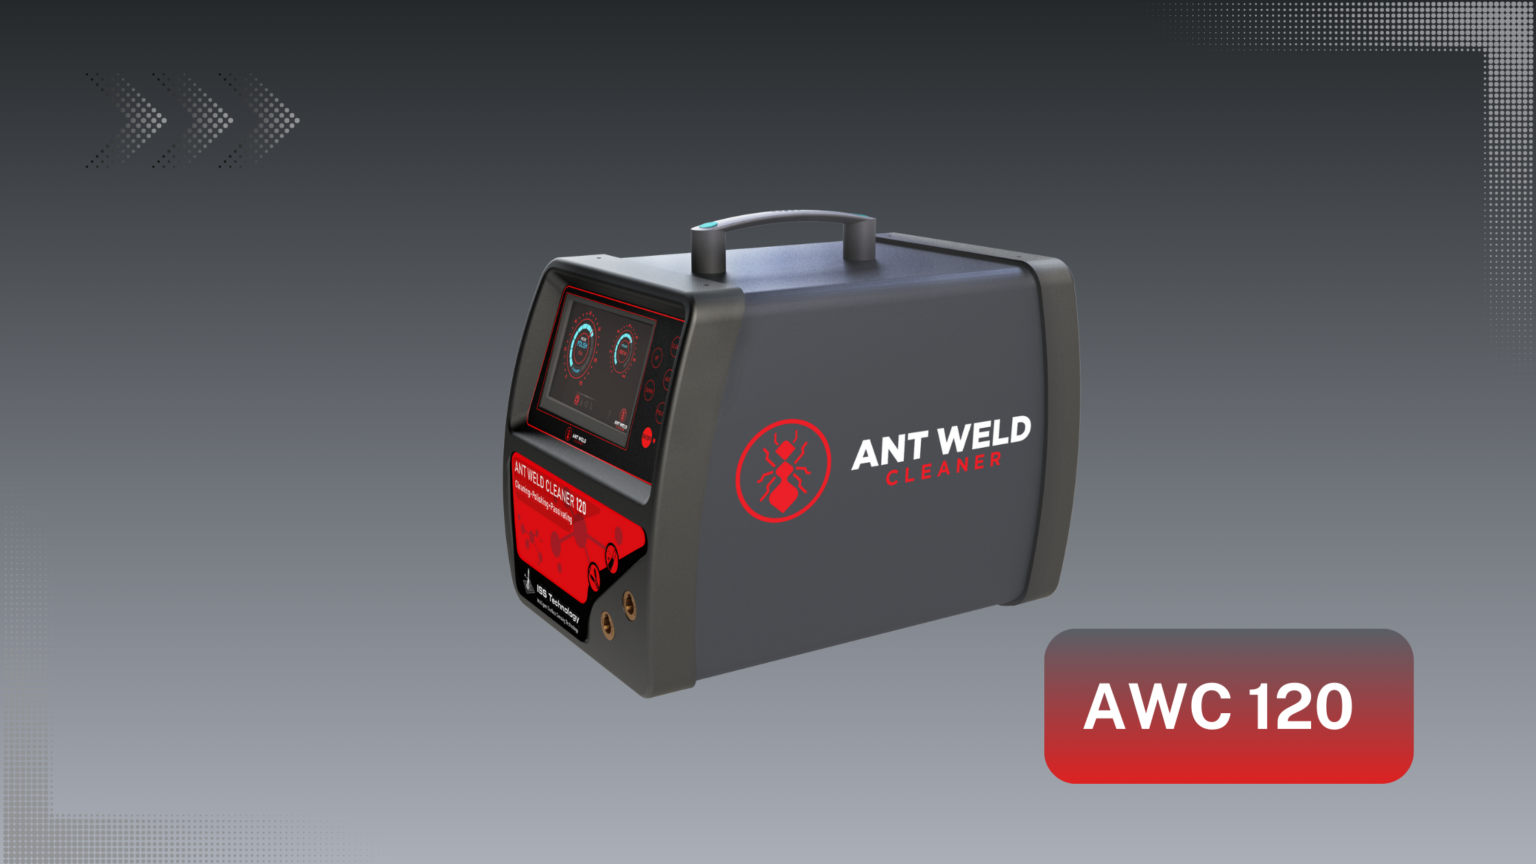 Ant Weld Cleaner - premium model 120